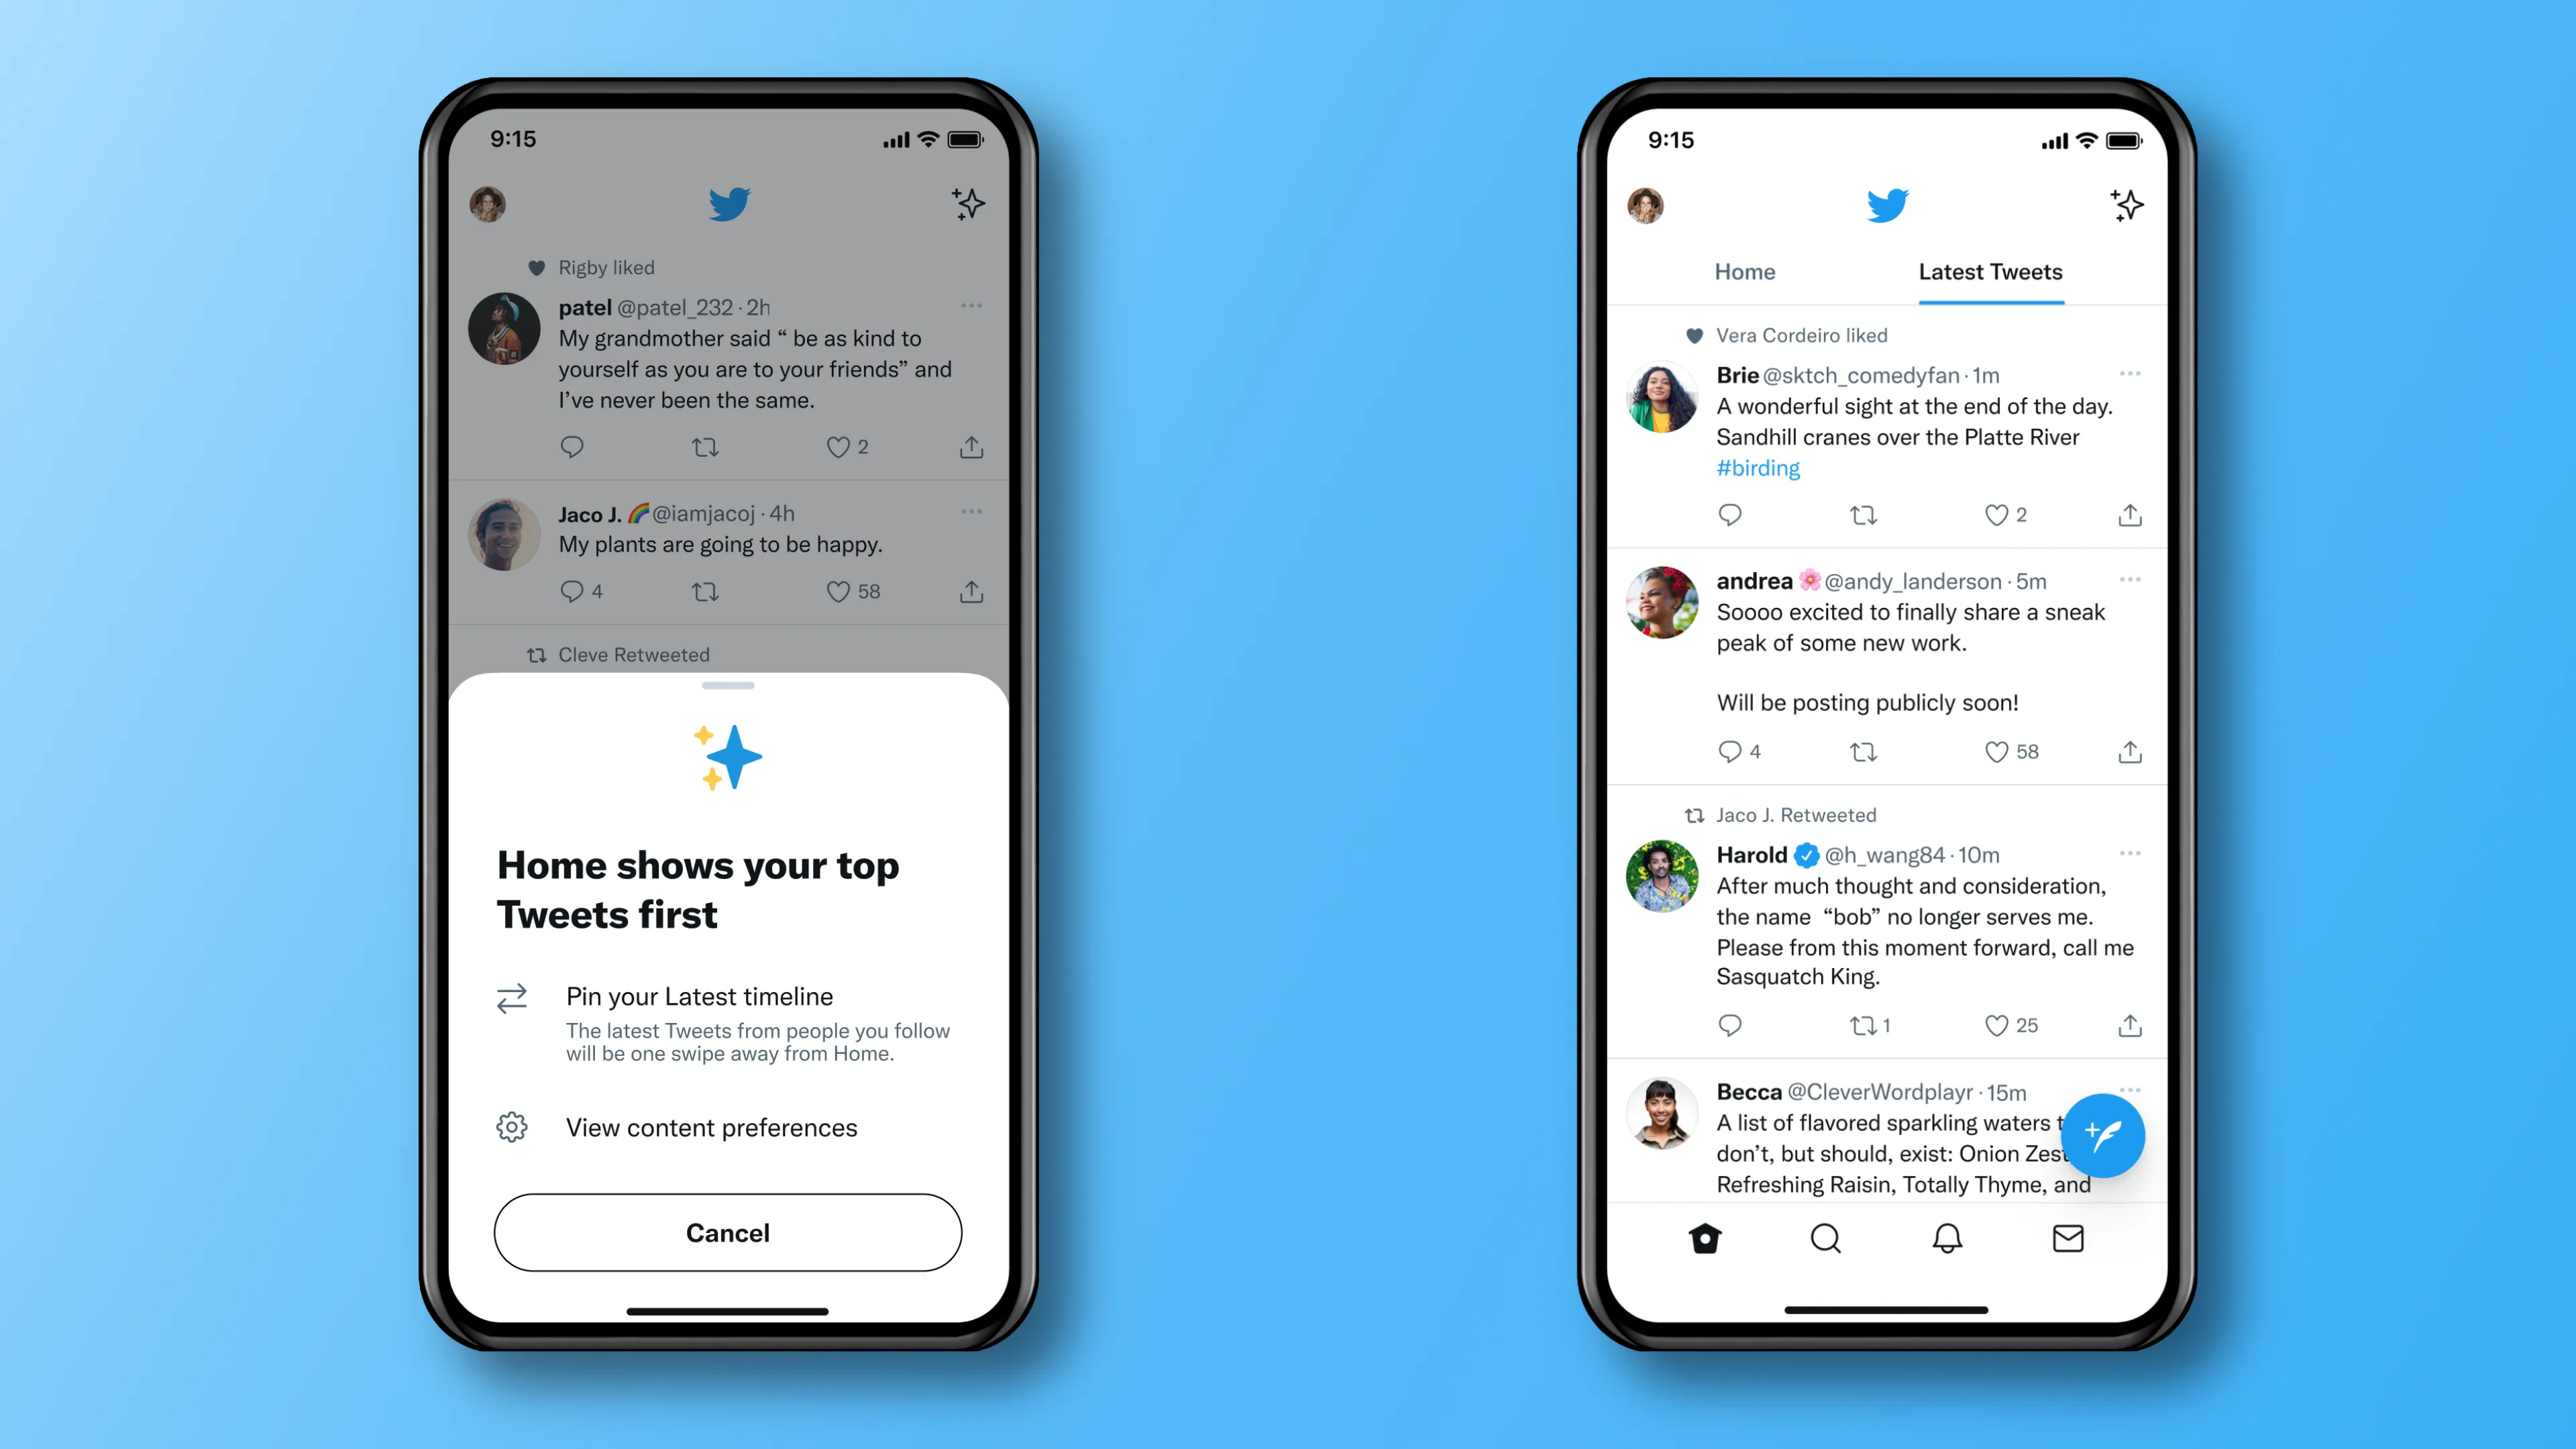 Zwei iPhone-Screenshots, die den Wechsel zwischen der chronologischen Zeitleiste und dem algorithmischen Feed in der mobilen Twitter-App zeigen